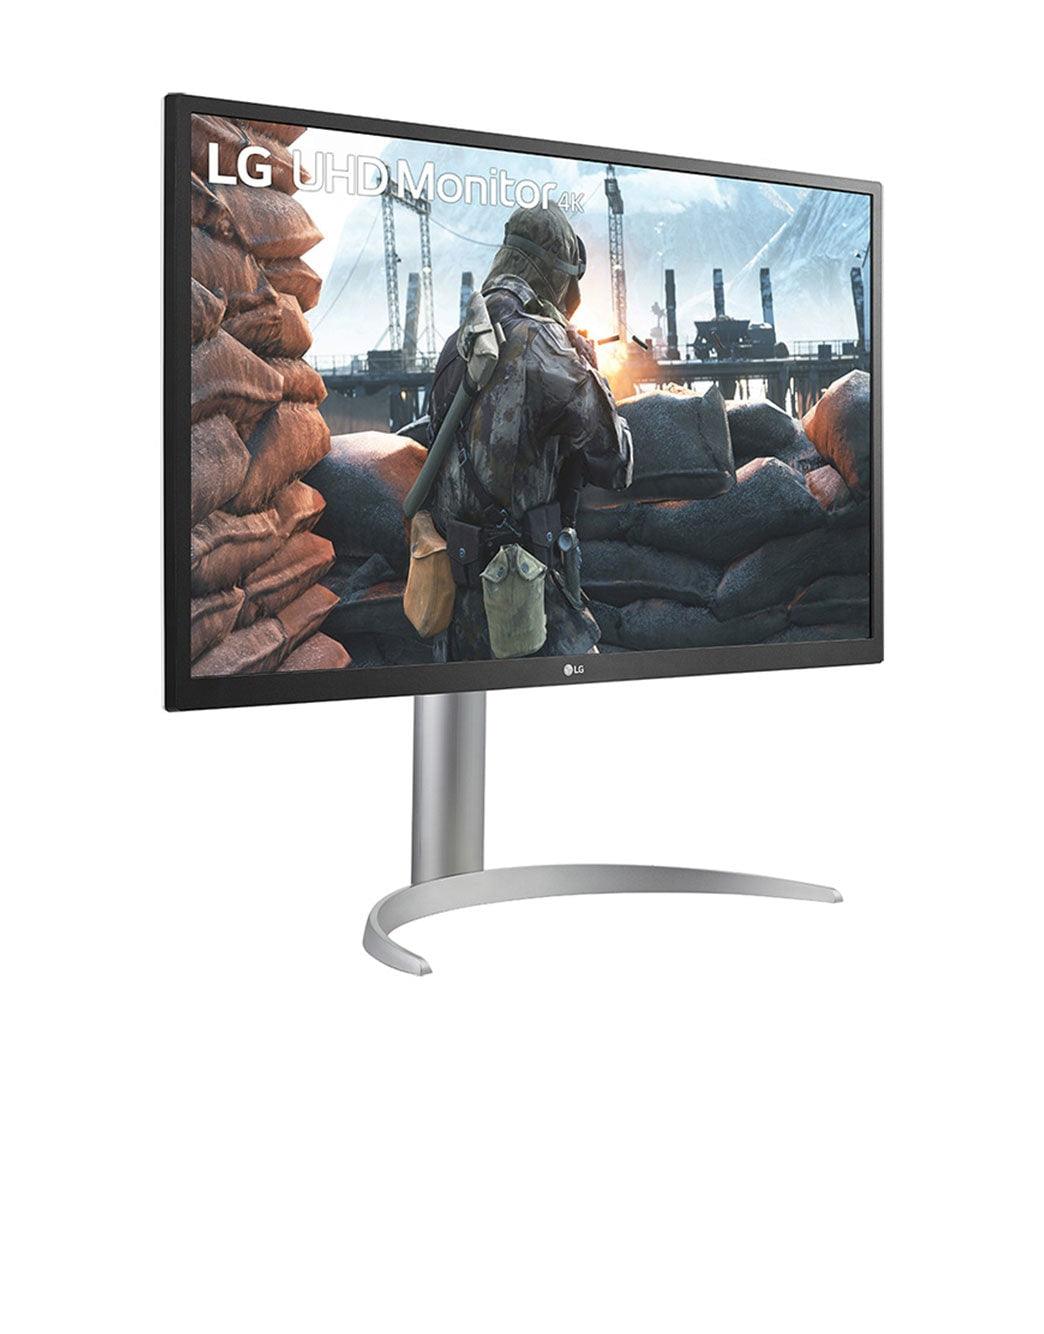 LG LED display (27") 4K Ultra HD White LG